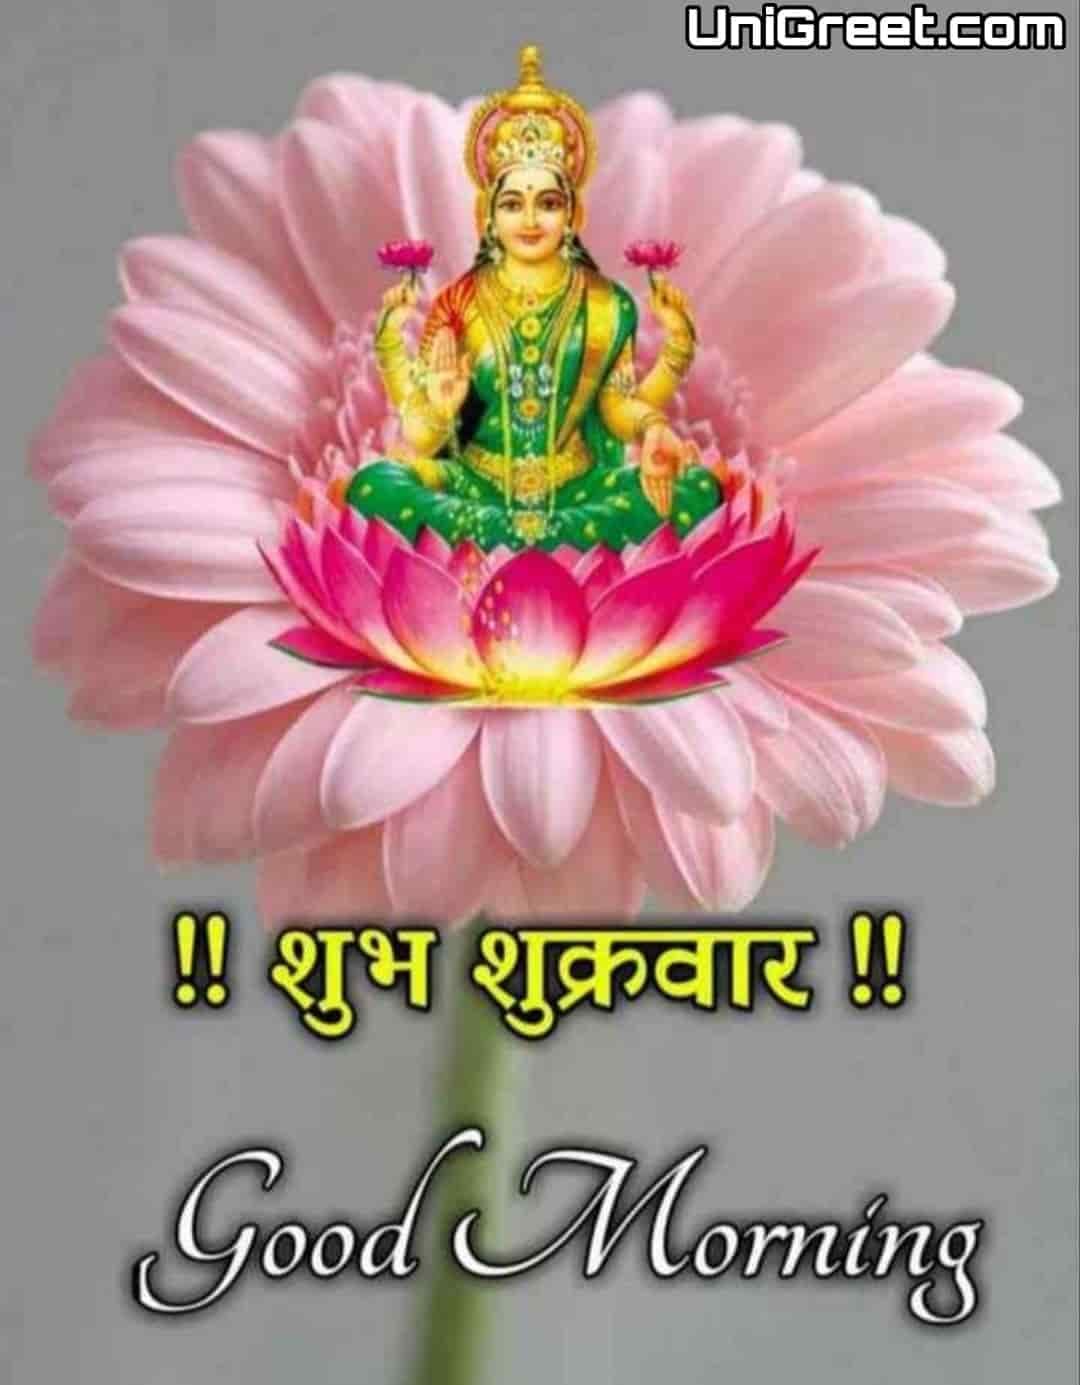 Shubh Shukrawar Good Morning Quotes In Hindi